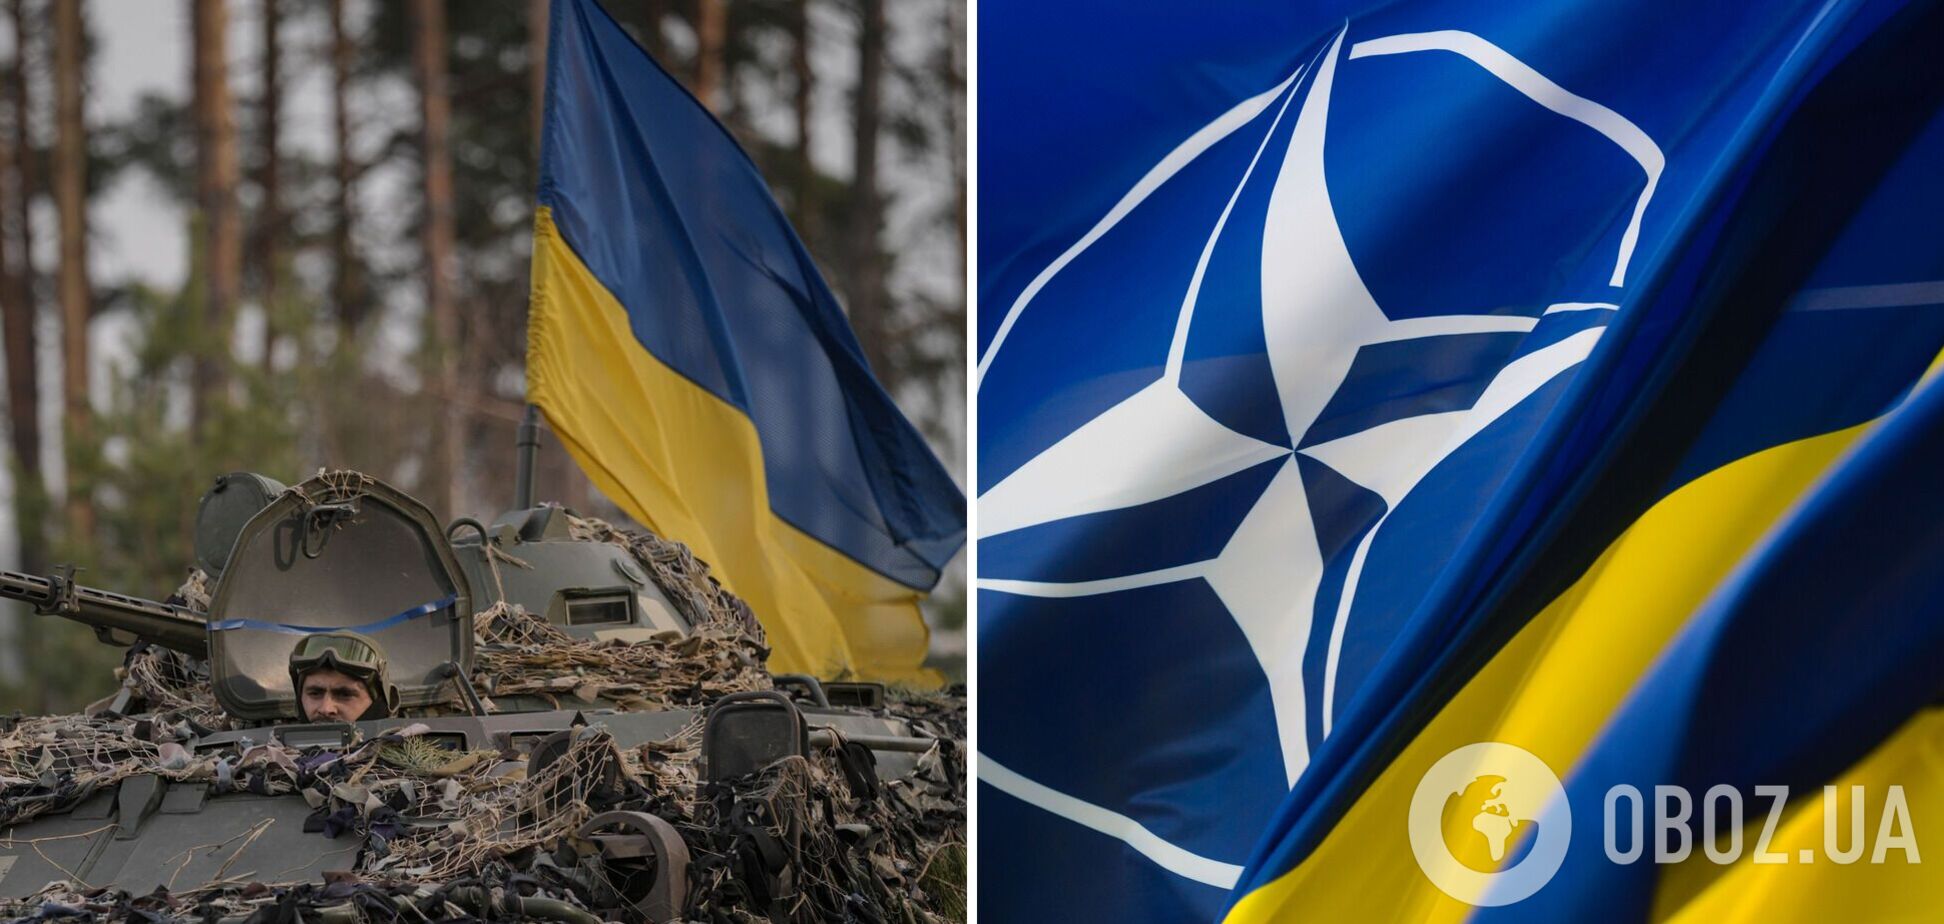 Почти две трети граждан стран-членов НАТО негативно относятся к России: опрос накануне саммита в Вильнюсе.